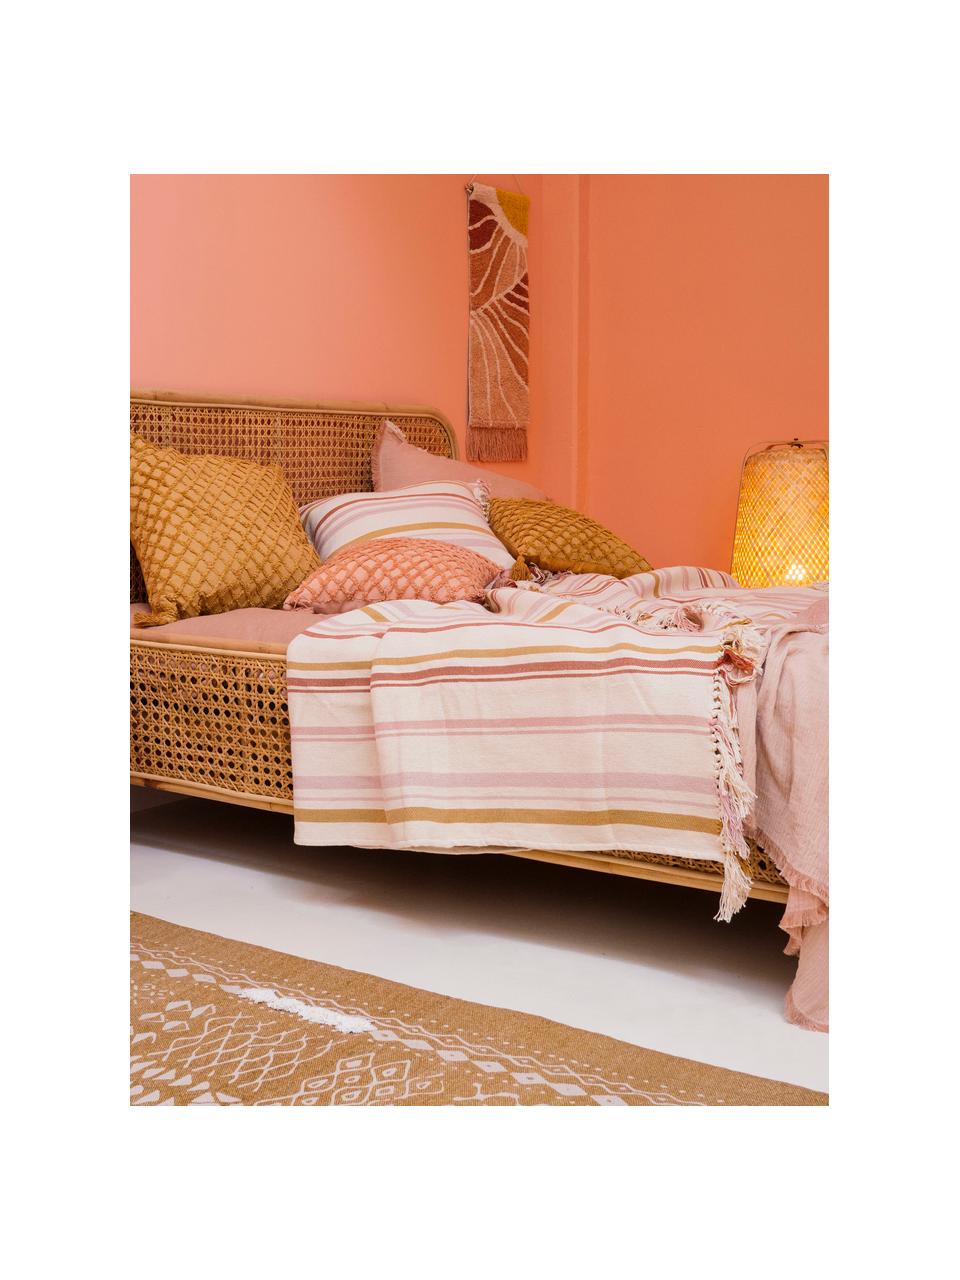 Gestreepte bedsprei Juarez van katoen, 100% katoen, Crèmekleurig, geel, roze, B 180 x L 260 cm (voor bedden tot 140 x 200)